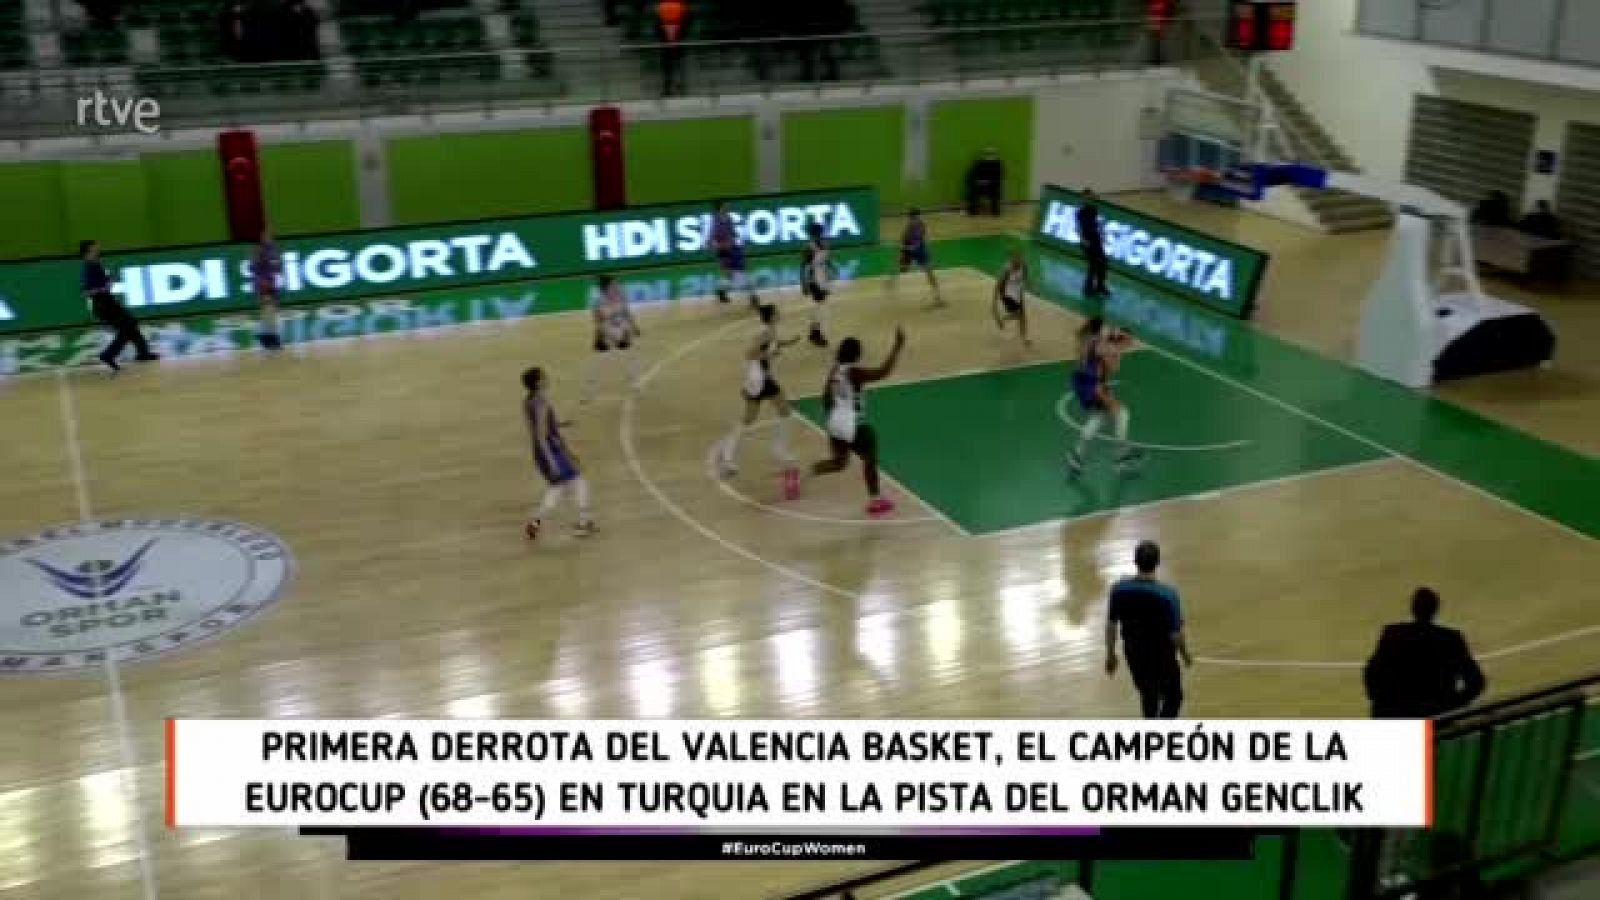 Eurocup: Valencia basket, a remontar 2 puntos en la Fonteta